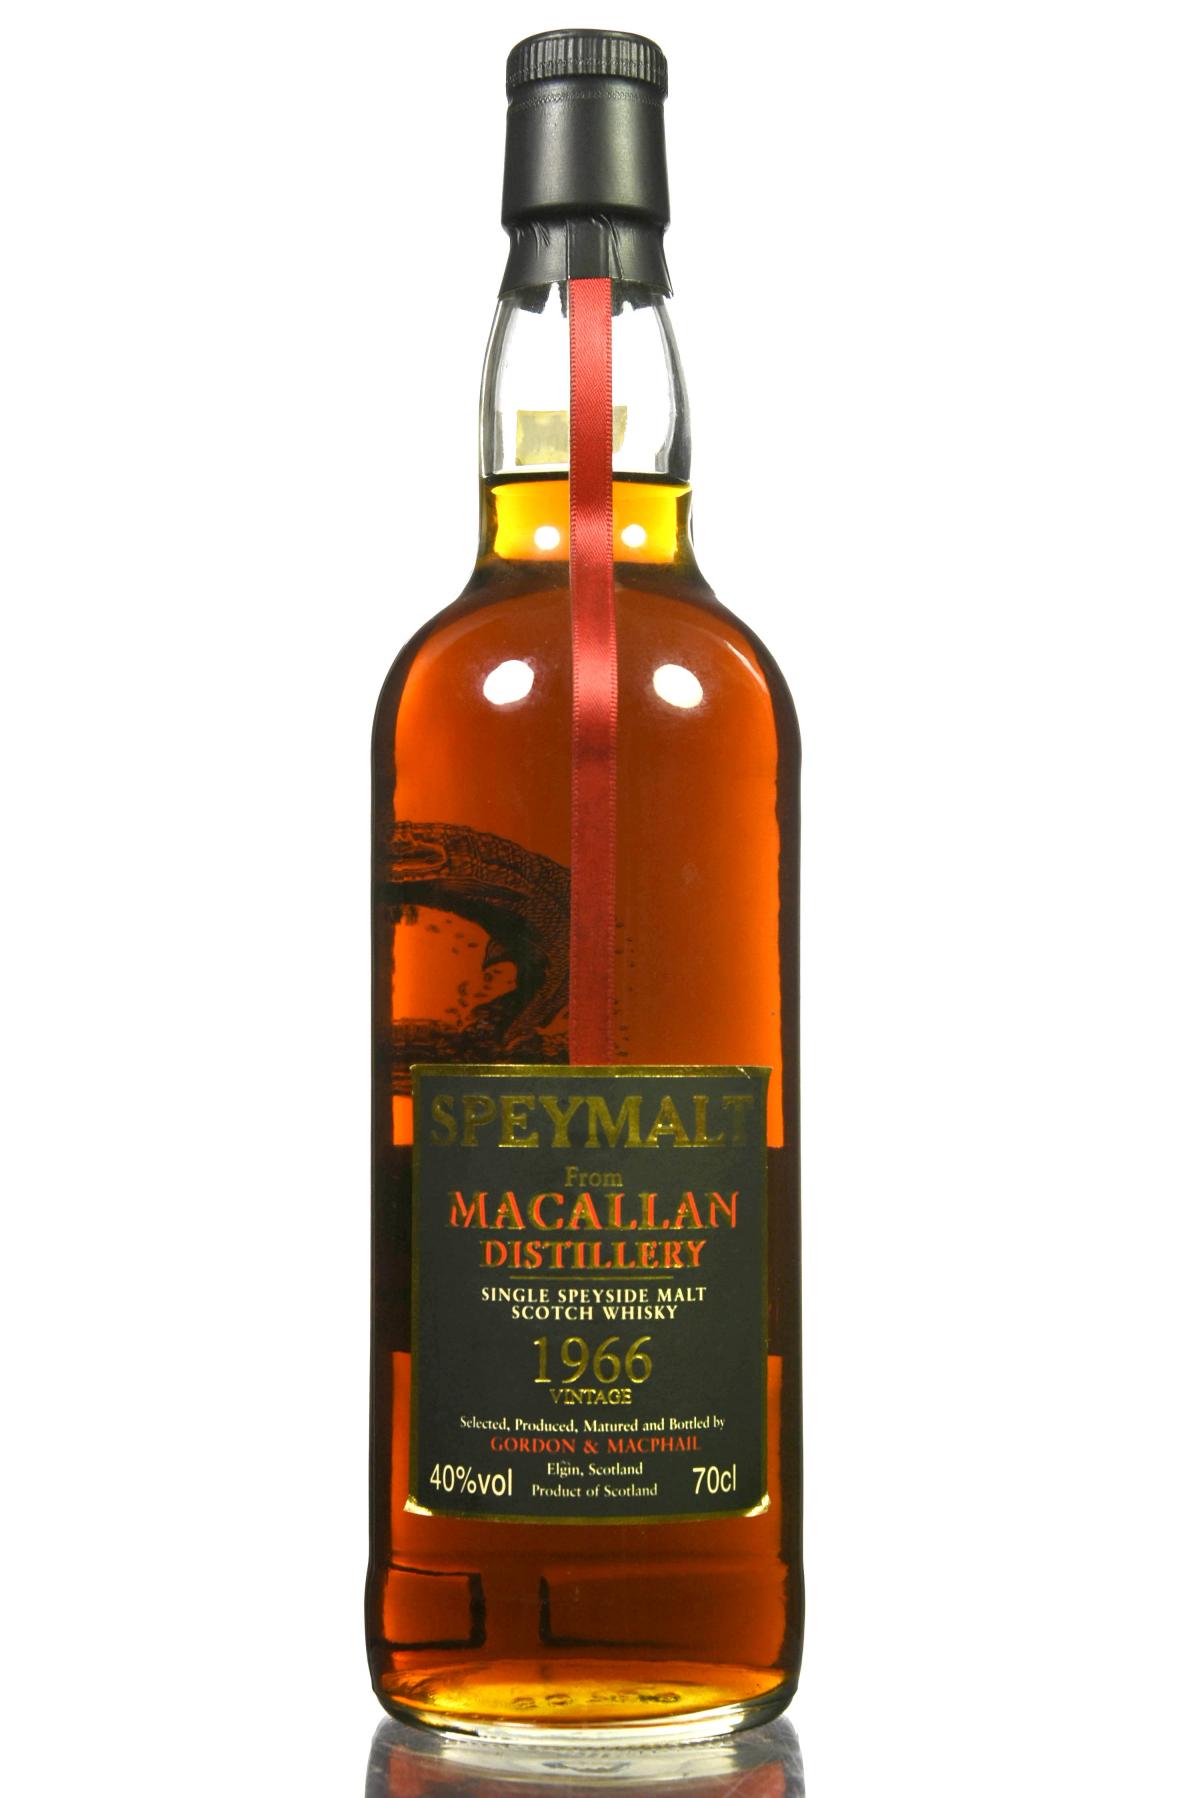 Macallan 1966-2000 - Speymalt